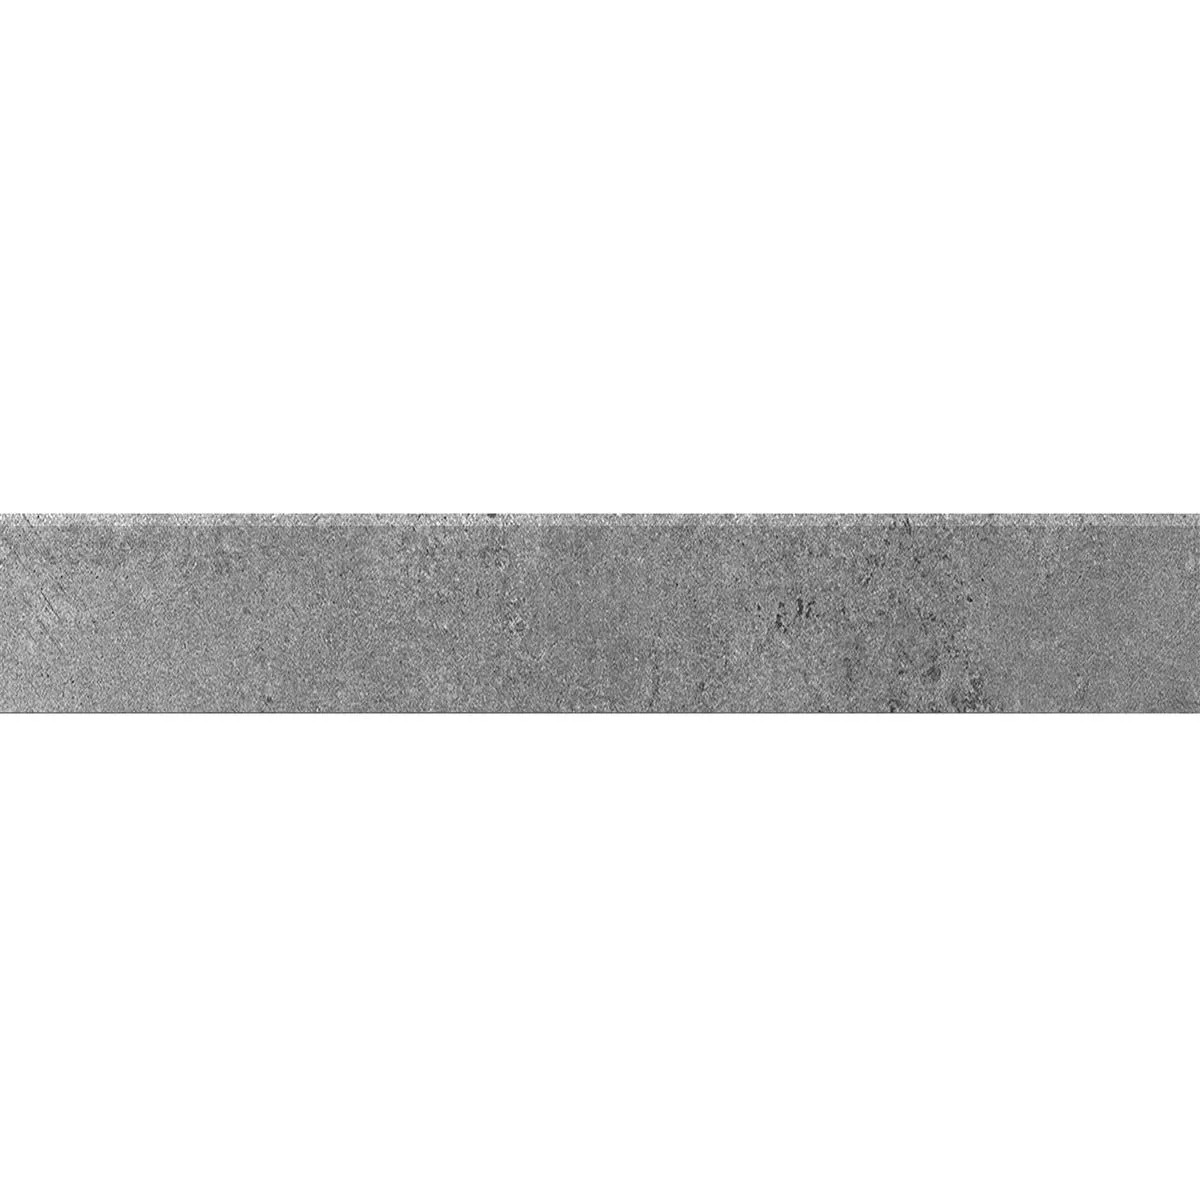 Σοβατεπί Colossus Ανθρακίτης 6,5x60cm